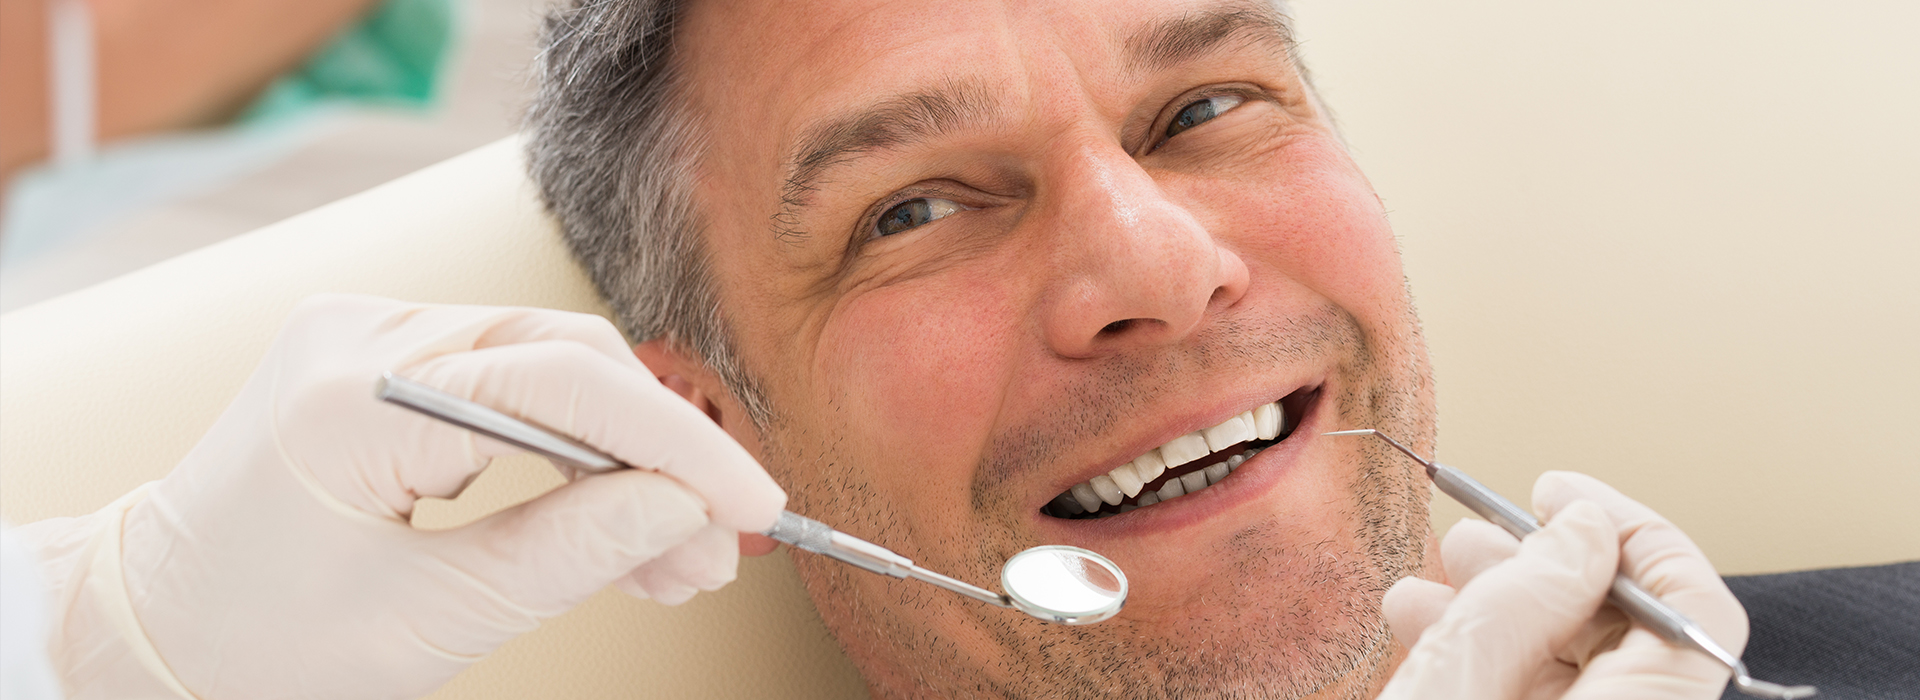 Kohn   Kollander Dental PLLC | Invisalign reg , Implant Dentistry and Sedation Dentistry